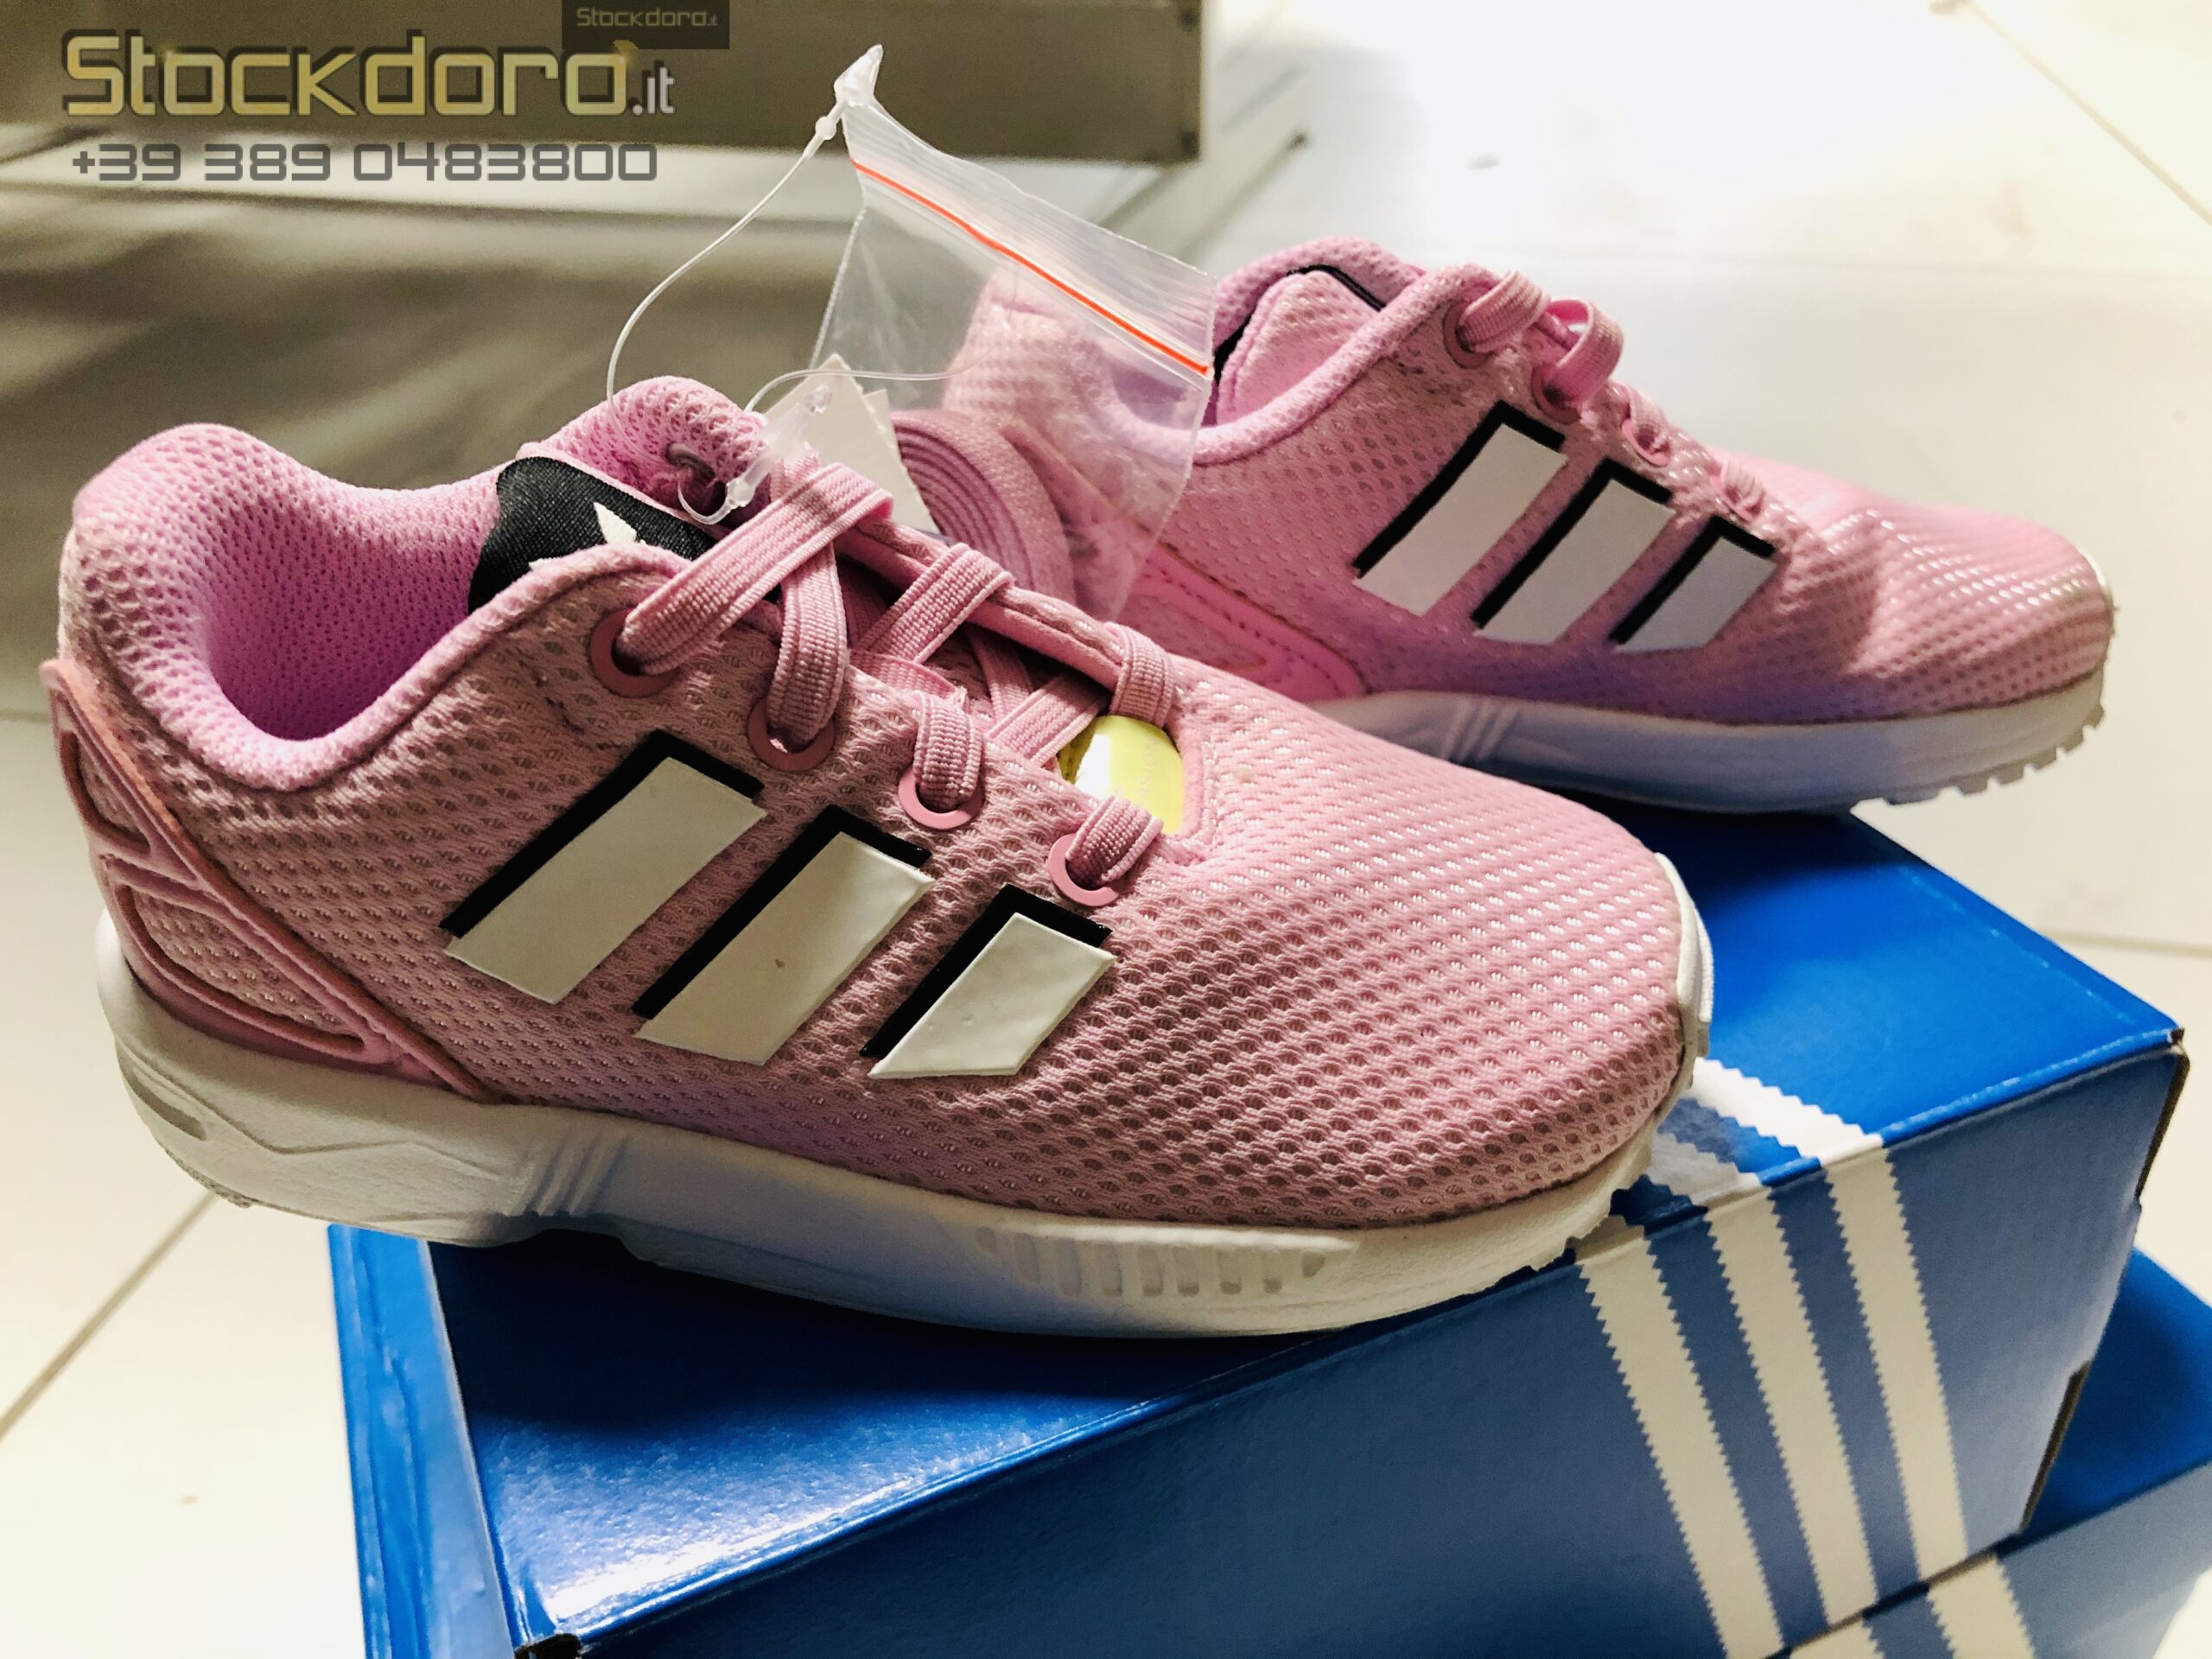 ADIDAS ZX FLUX rosa | Stockdoro - Vendita online di stock abbigliamento  scarpe ed accessori per Uomo, Donna e Bambino.